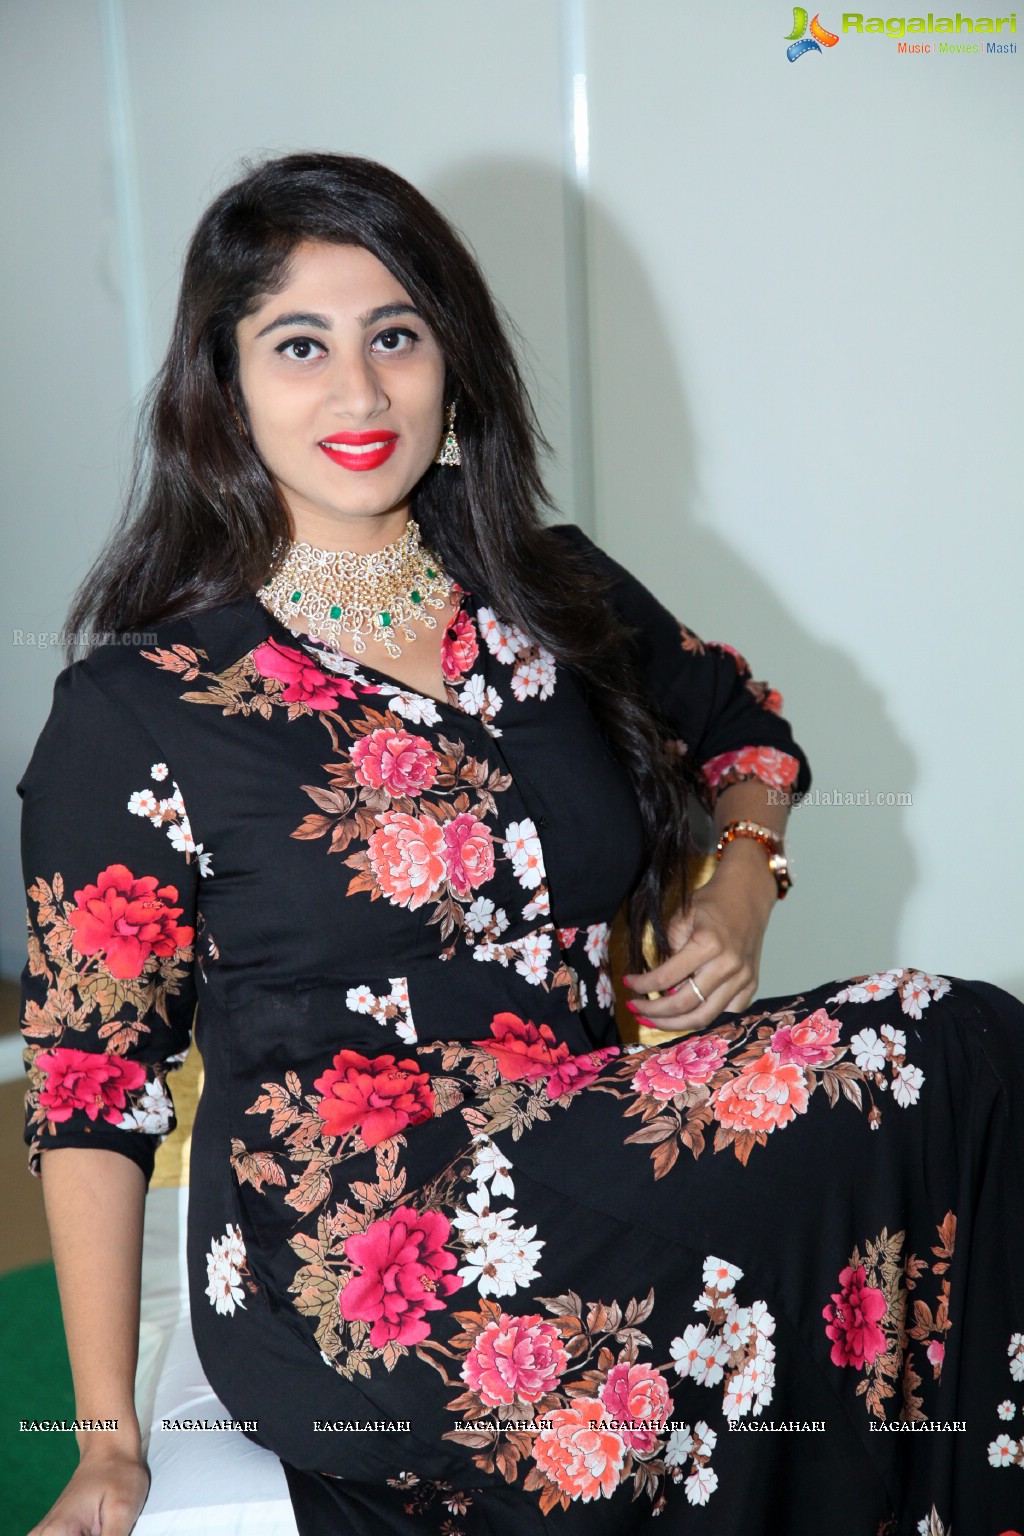 Manasa Jonnalagadda at Jibran Jewels Fashion Show